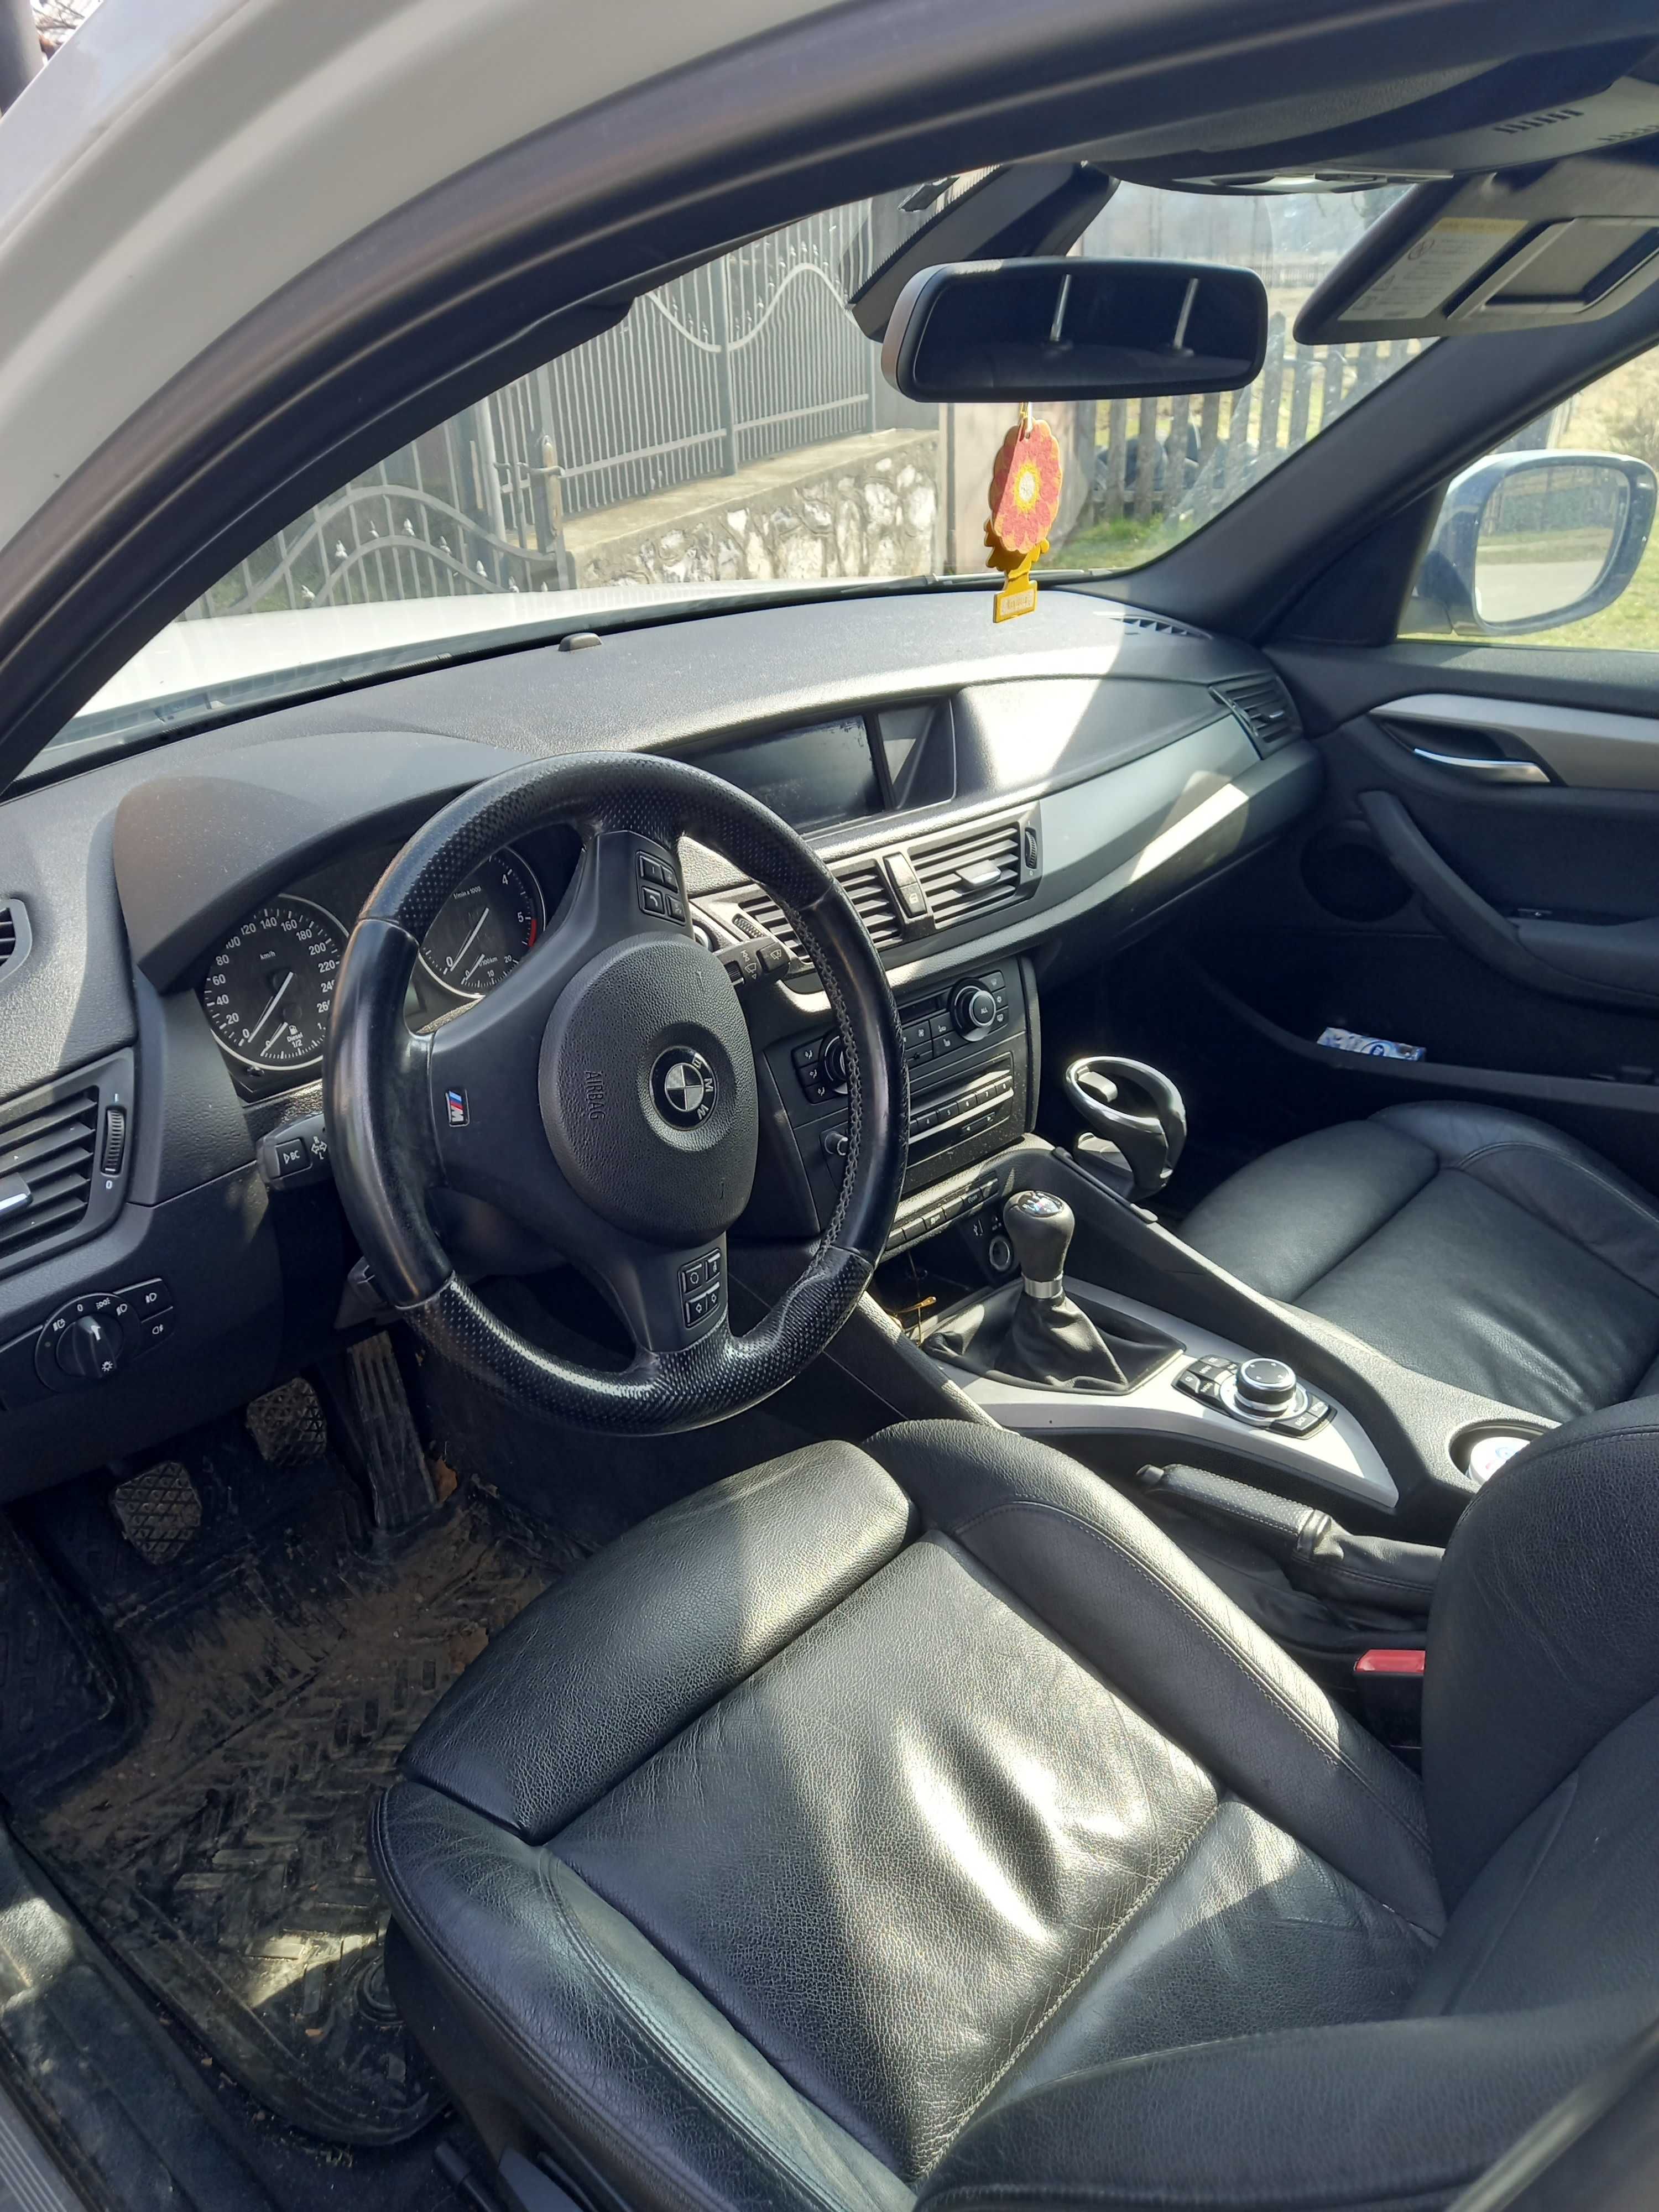 VAND BMW X1 An2013